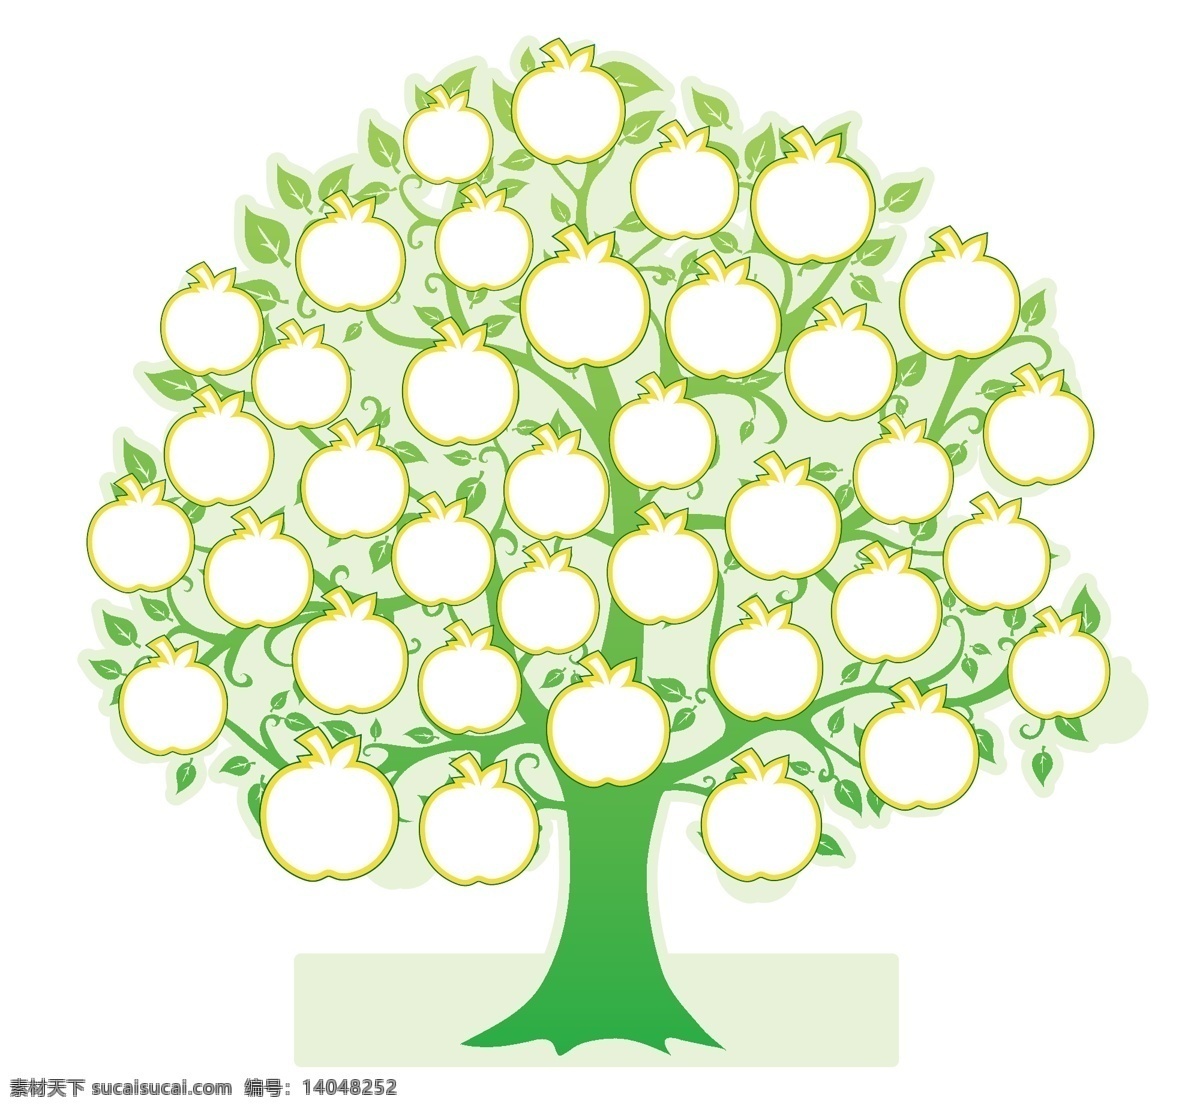 苹果树 苹果 树 矢量树 青苹果 图片墙 树木树叶 生物世界 矢量